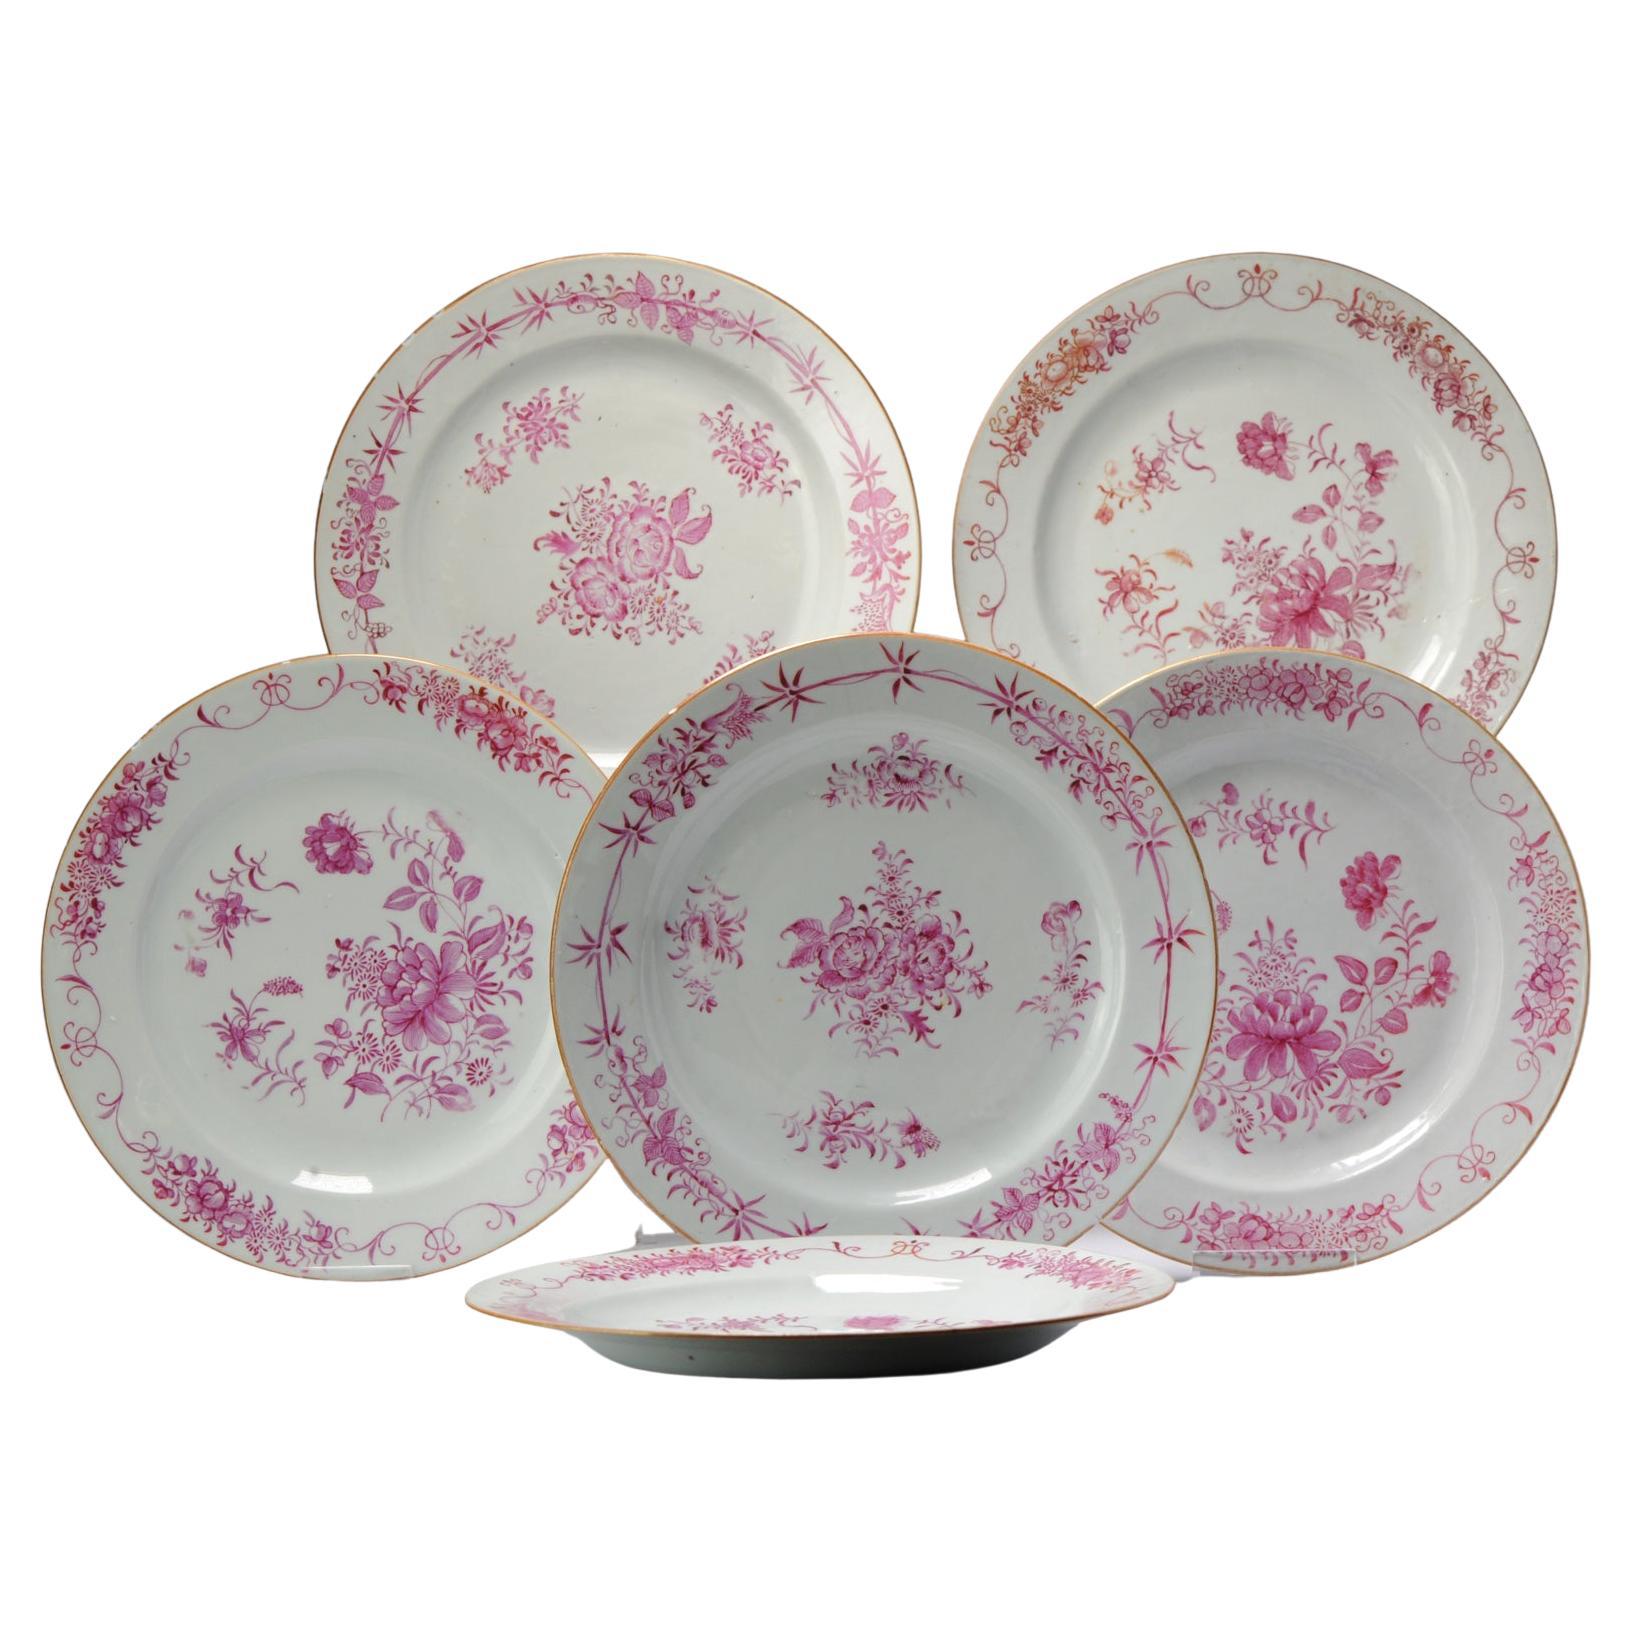 Assiettes plates en porcelaine chinoise ancienne n° 5 de la période Qianlong du 18ème siècle, période Famille Rose